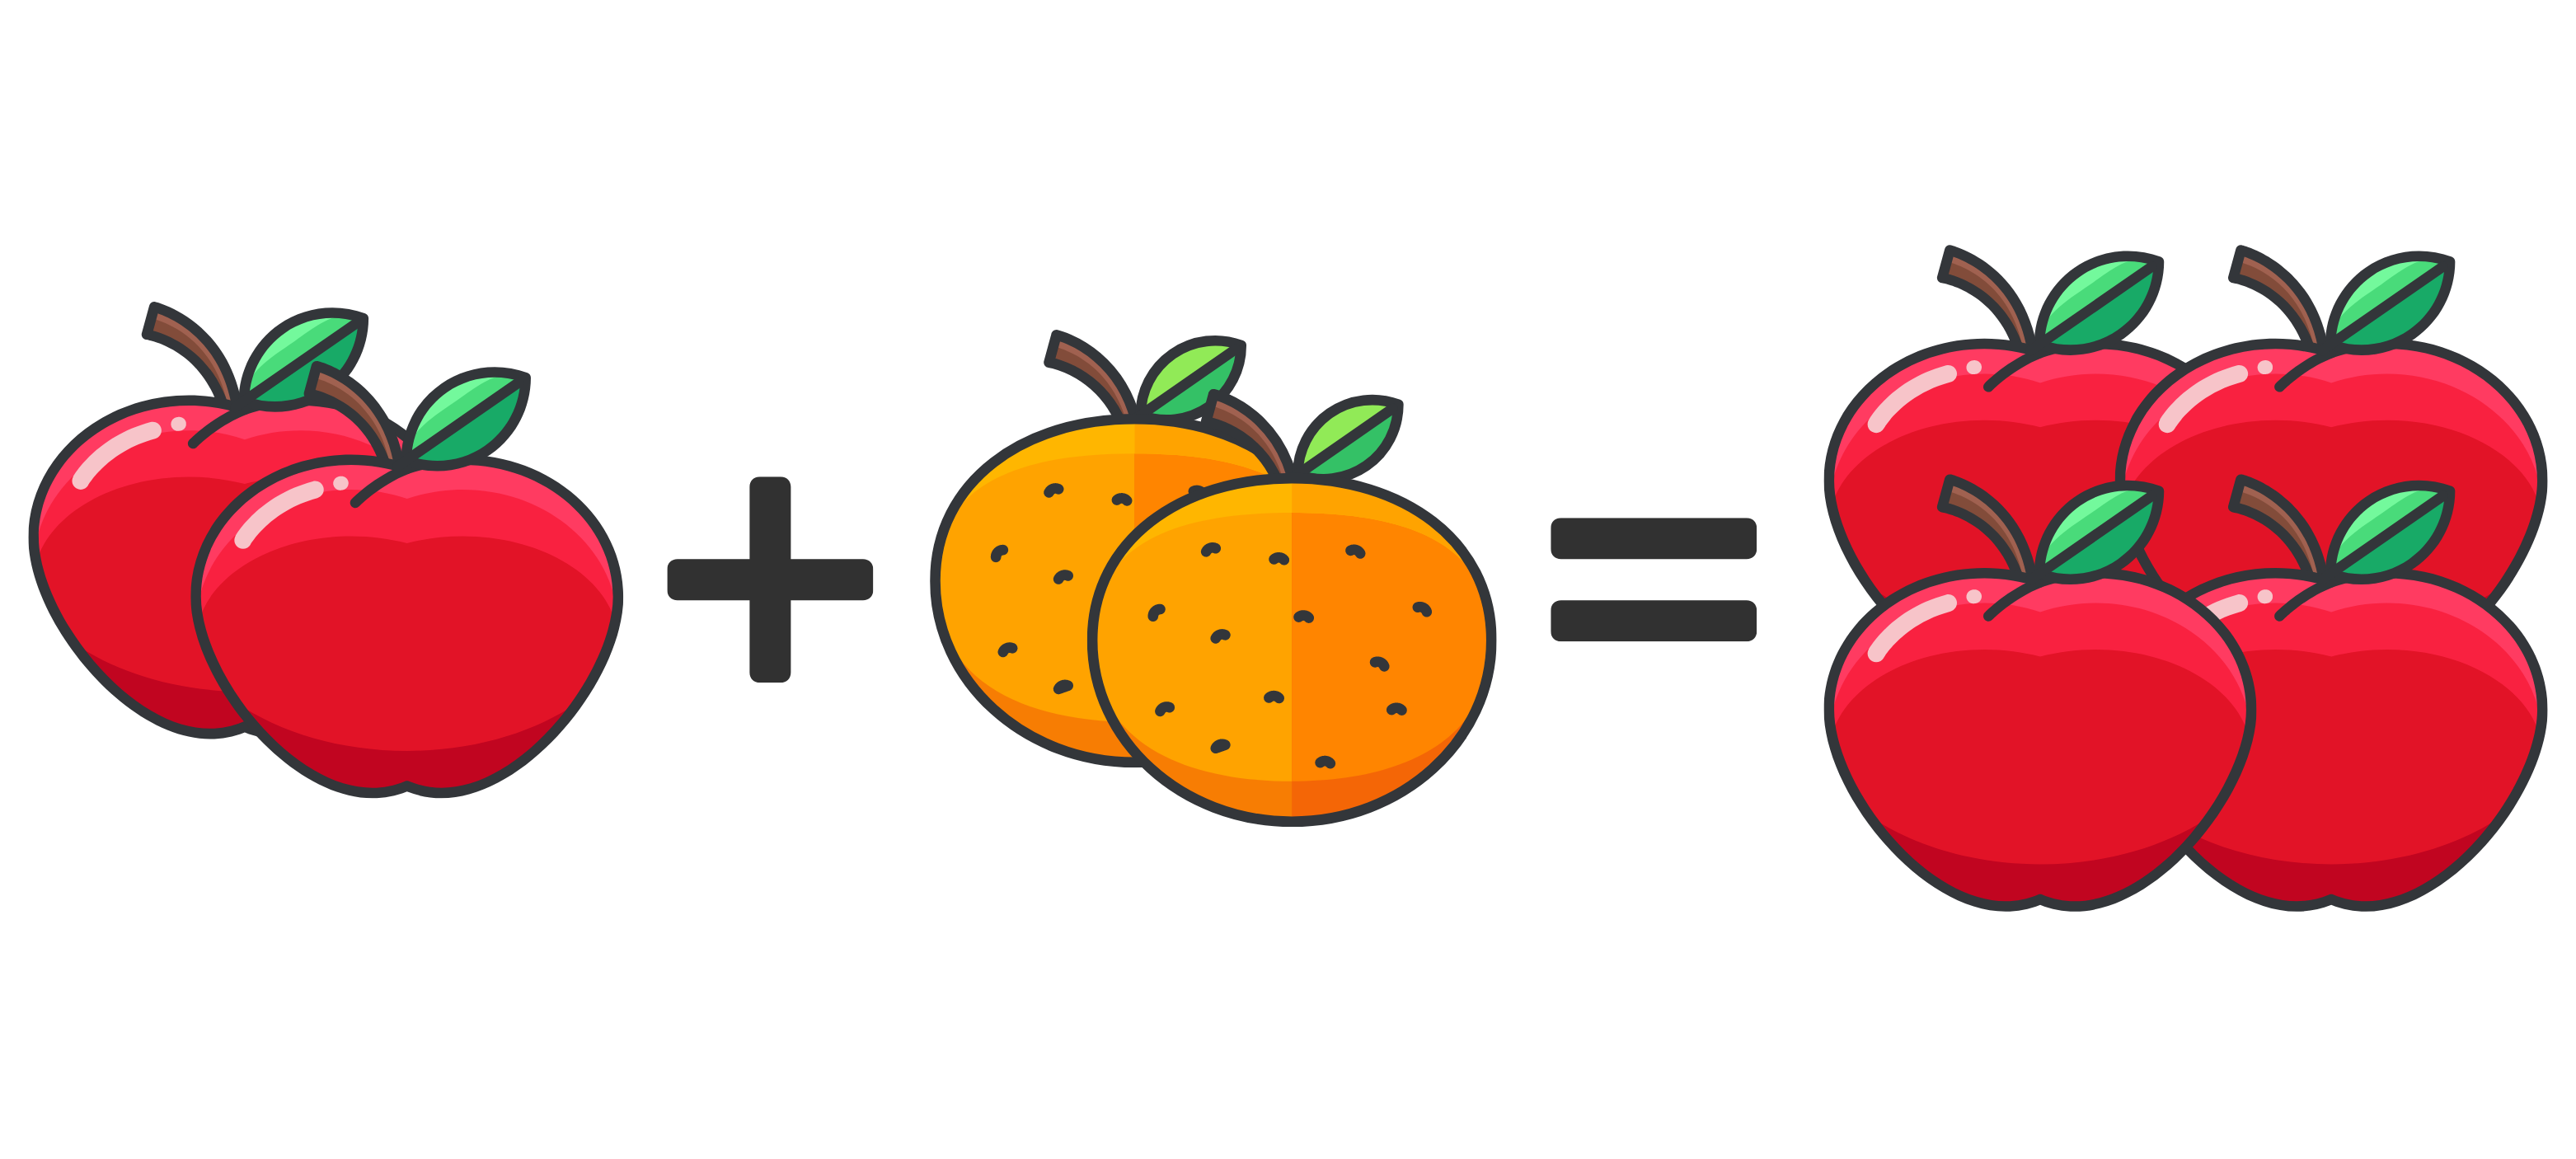 2 apples plus 2 oranges equals 4 apples image